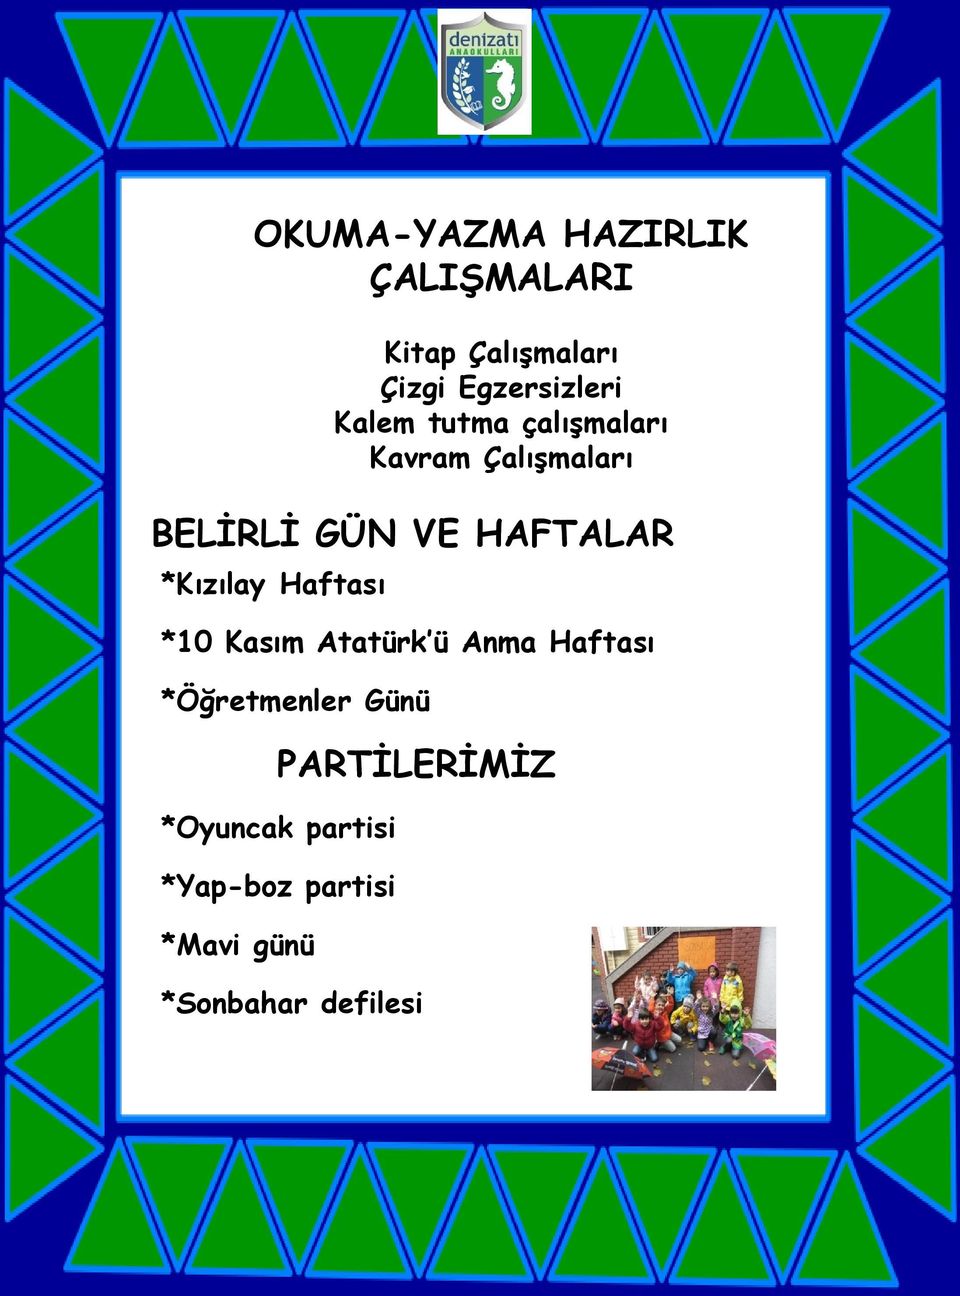 *Kızılay Haftası *10 Kasım Atatürk ü Anma Haftası *Öğretmenler Günü